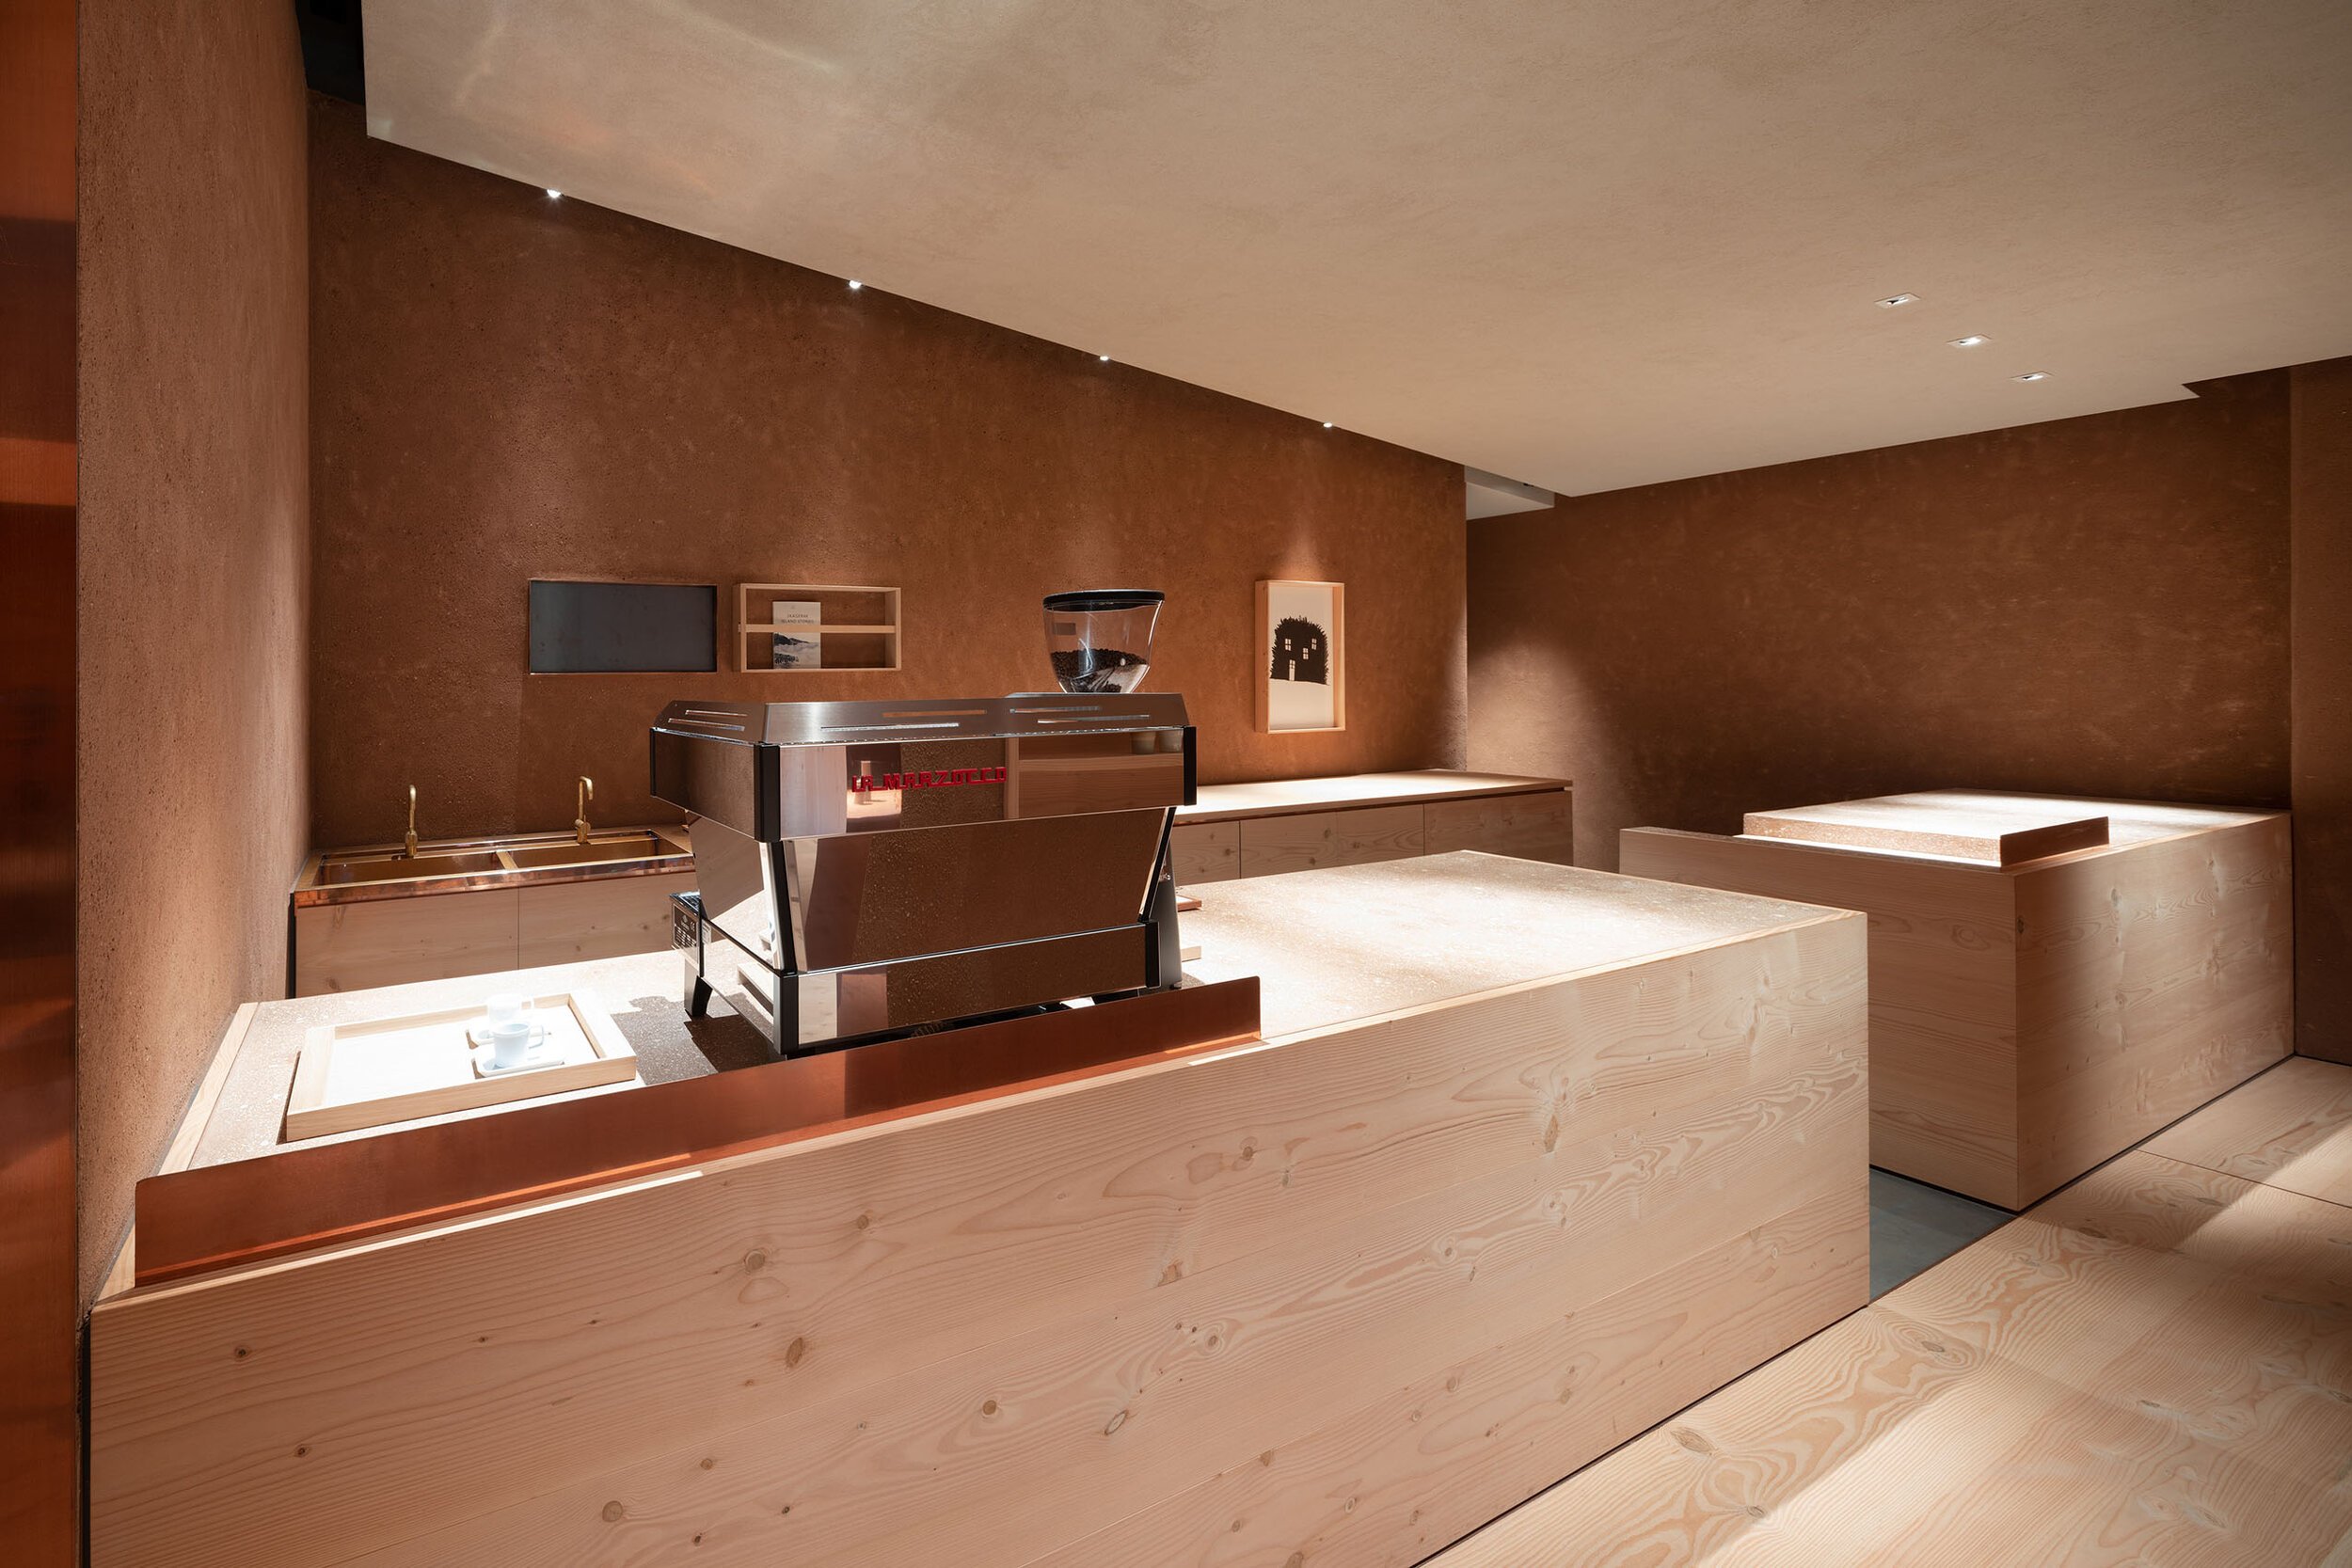  TERUHIRO YANAGIHARA STUDIOの柳原照弘がデザインした1616/arita japan 有田ショールームのカフェ 